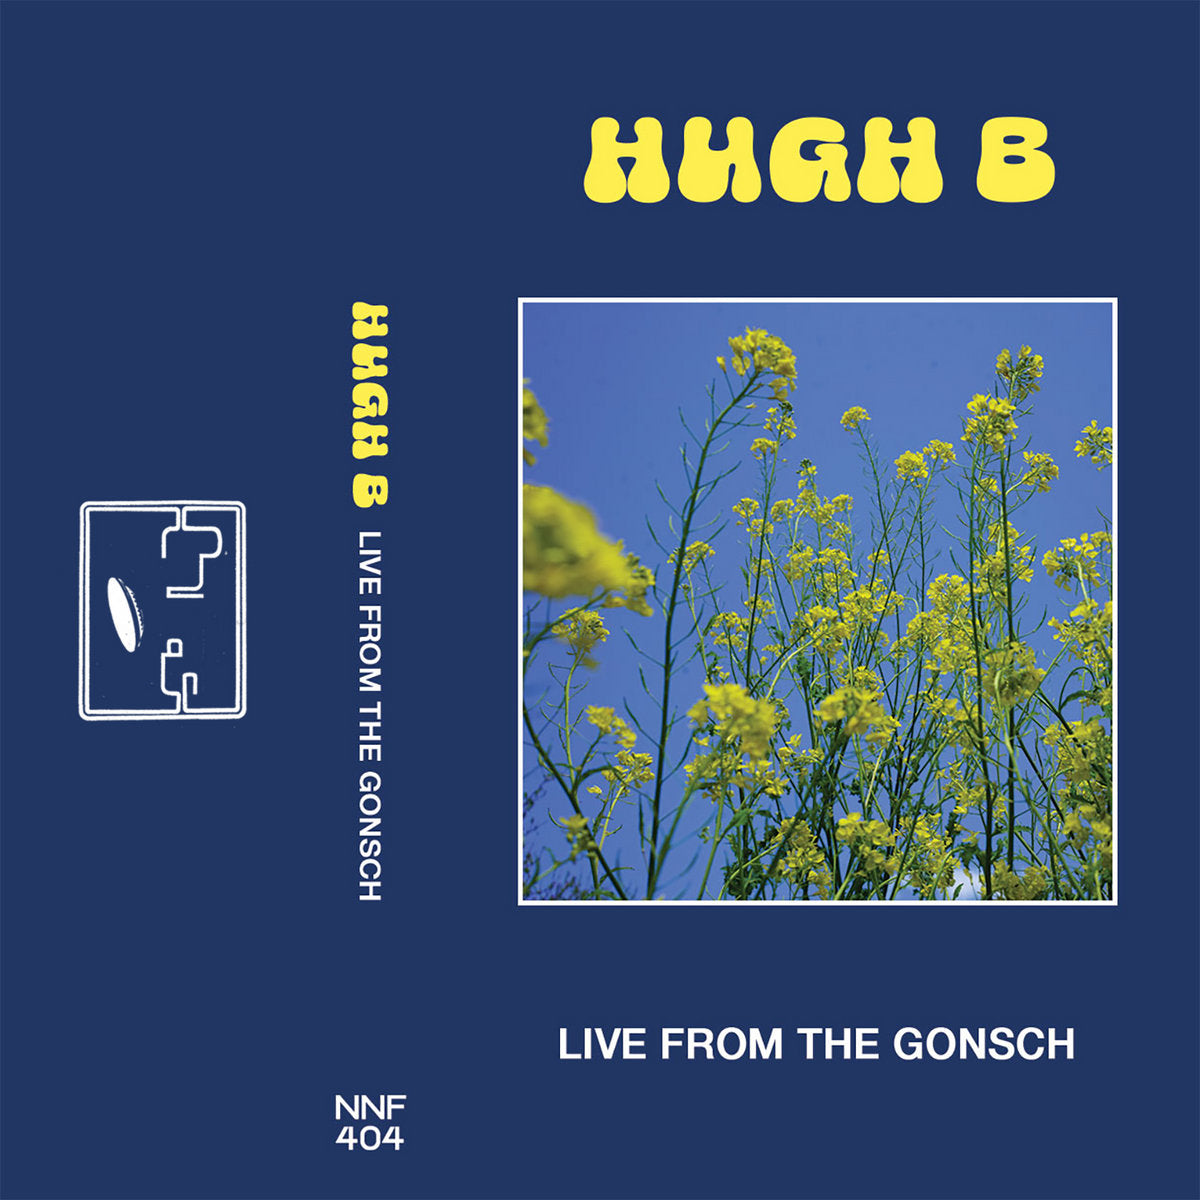 HUGH B - "LIVE FROM THE GONSCH" CS